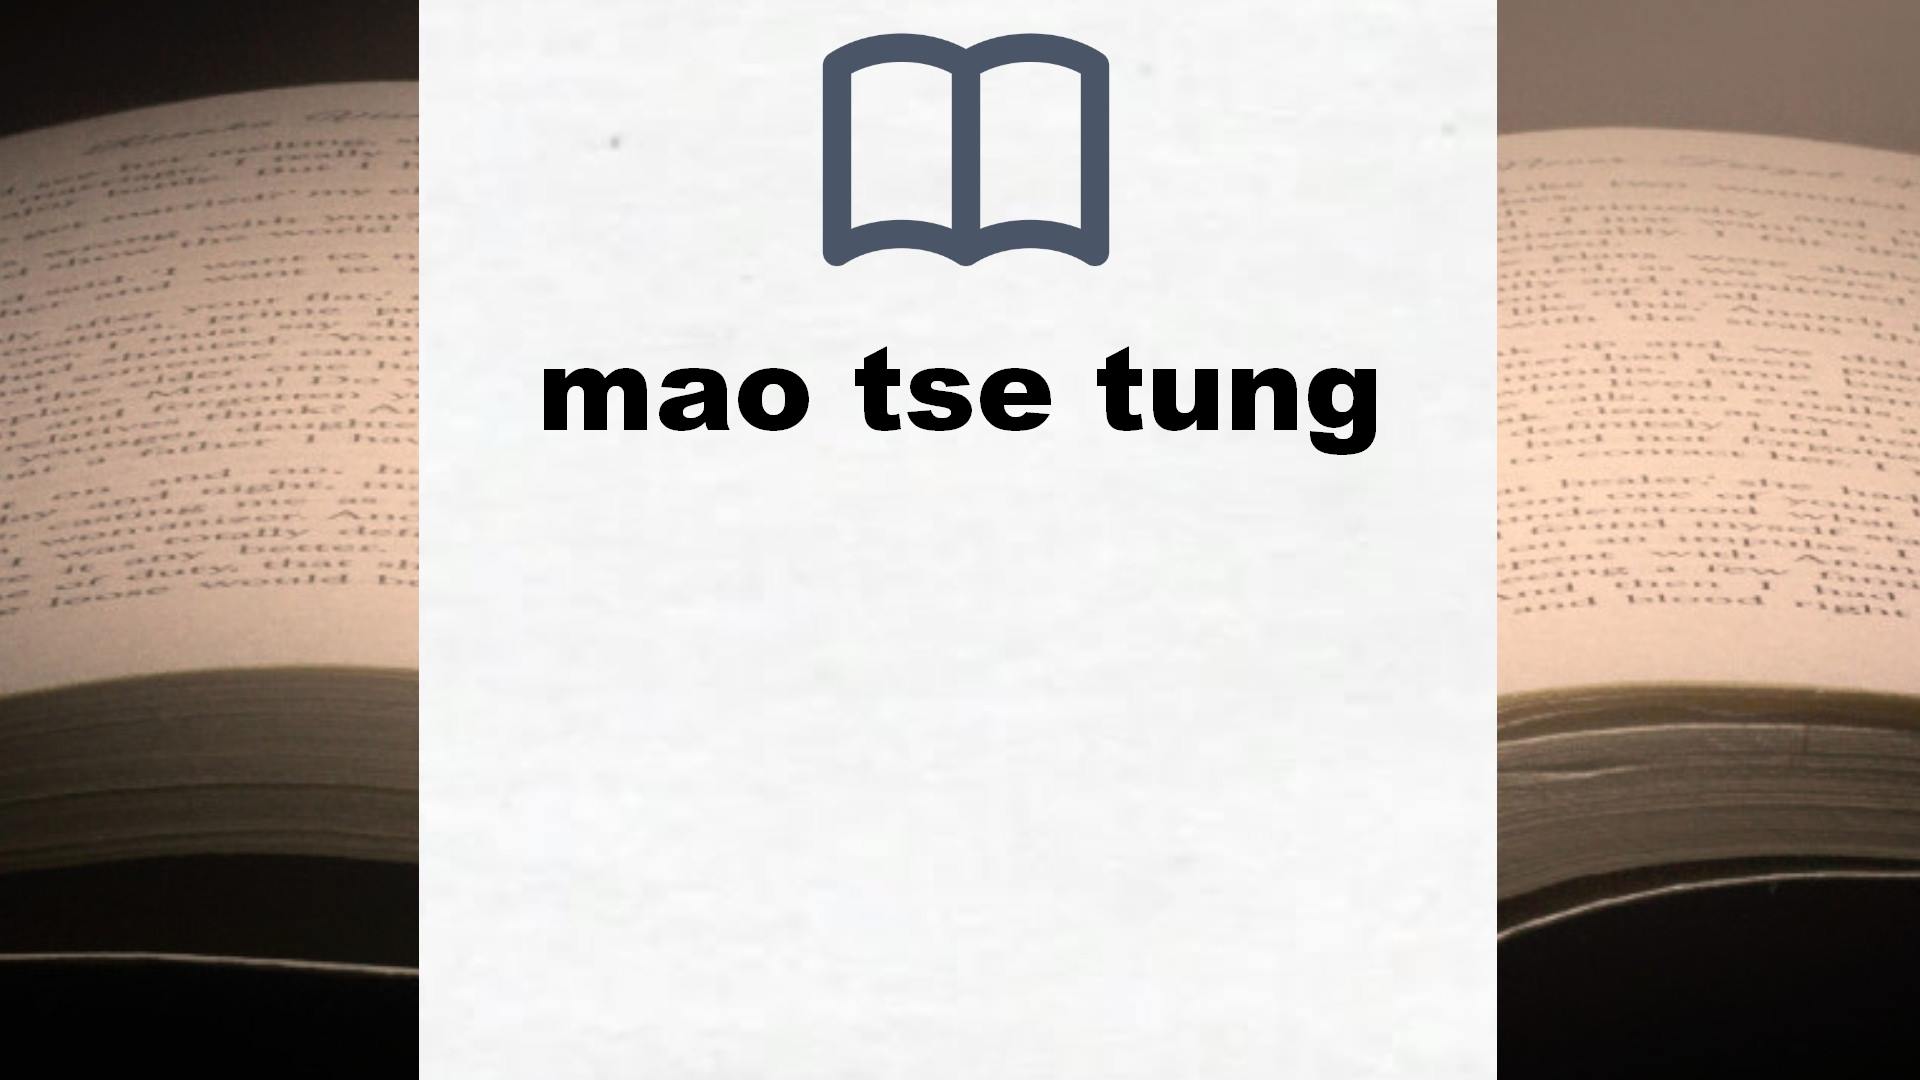 Libros sobre mao tse tung